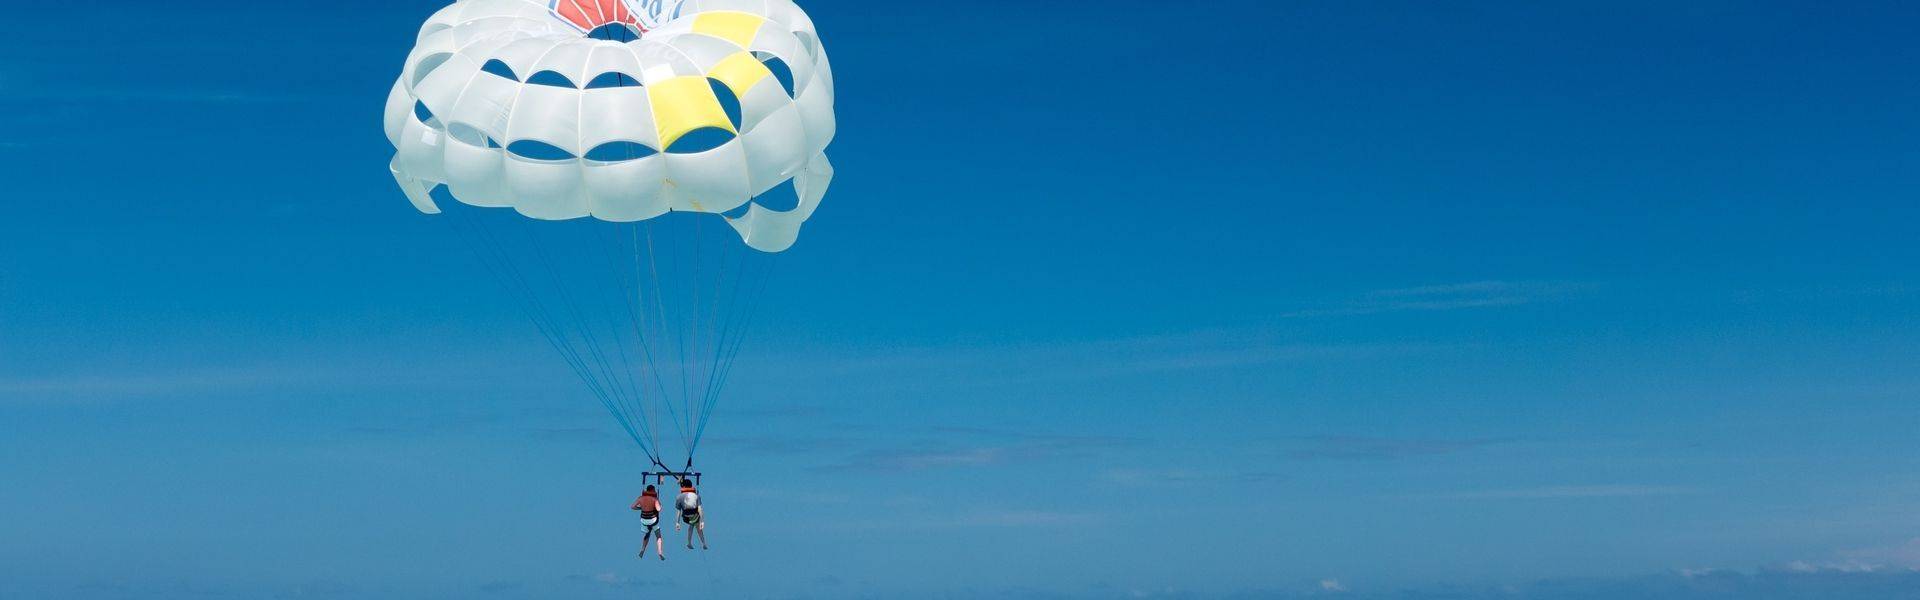 Le parachute ascensionnel à l'île Maurice (parasailing)